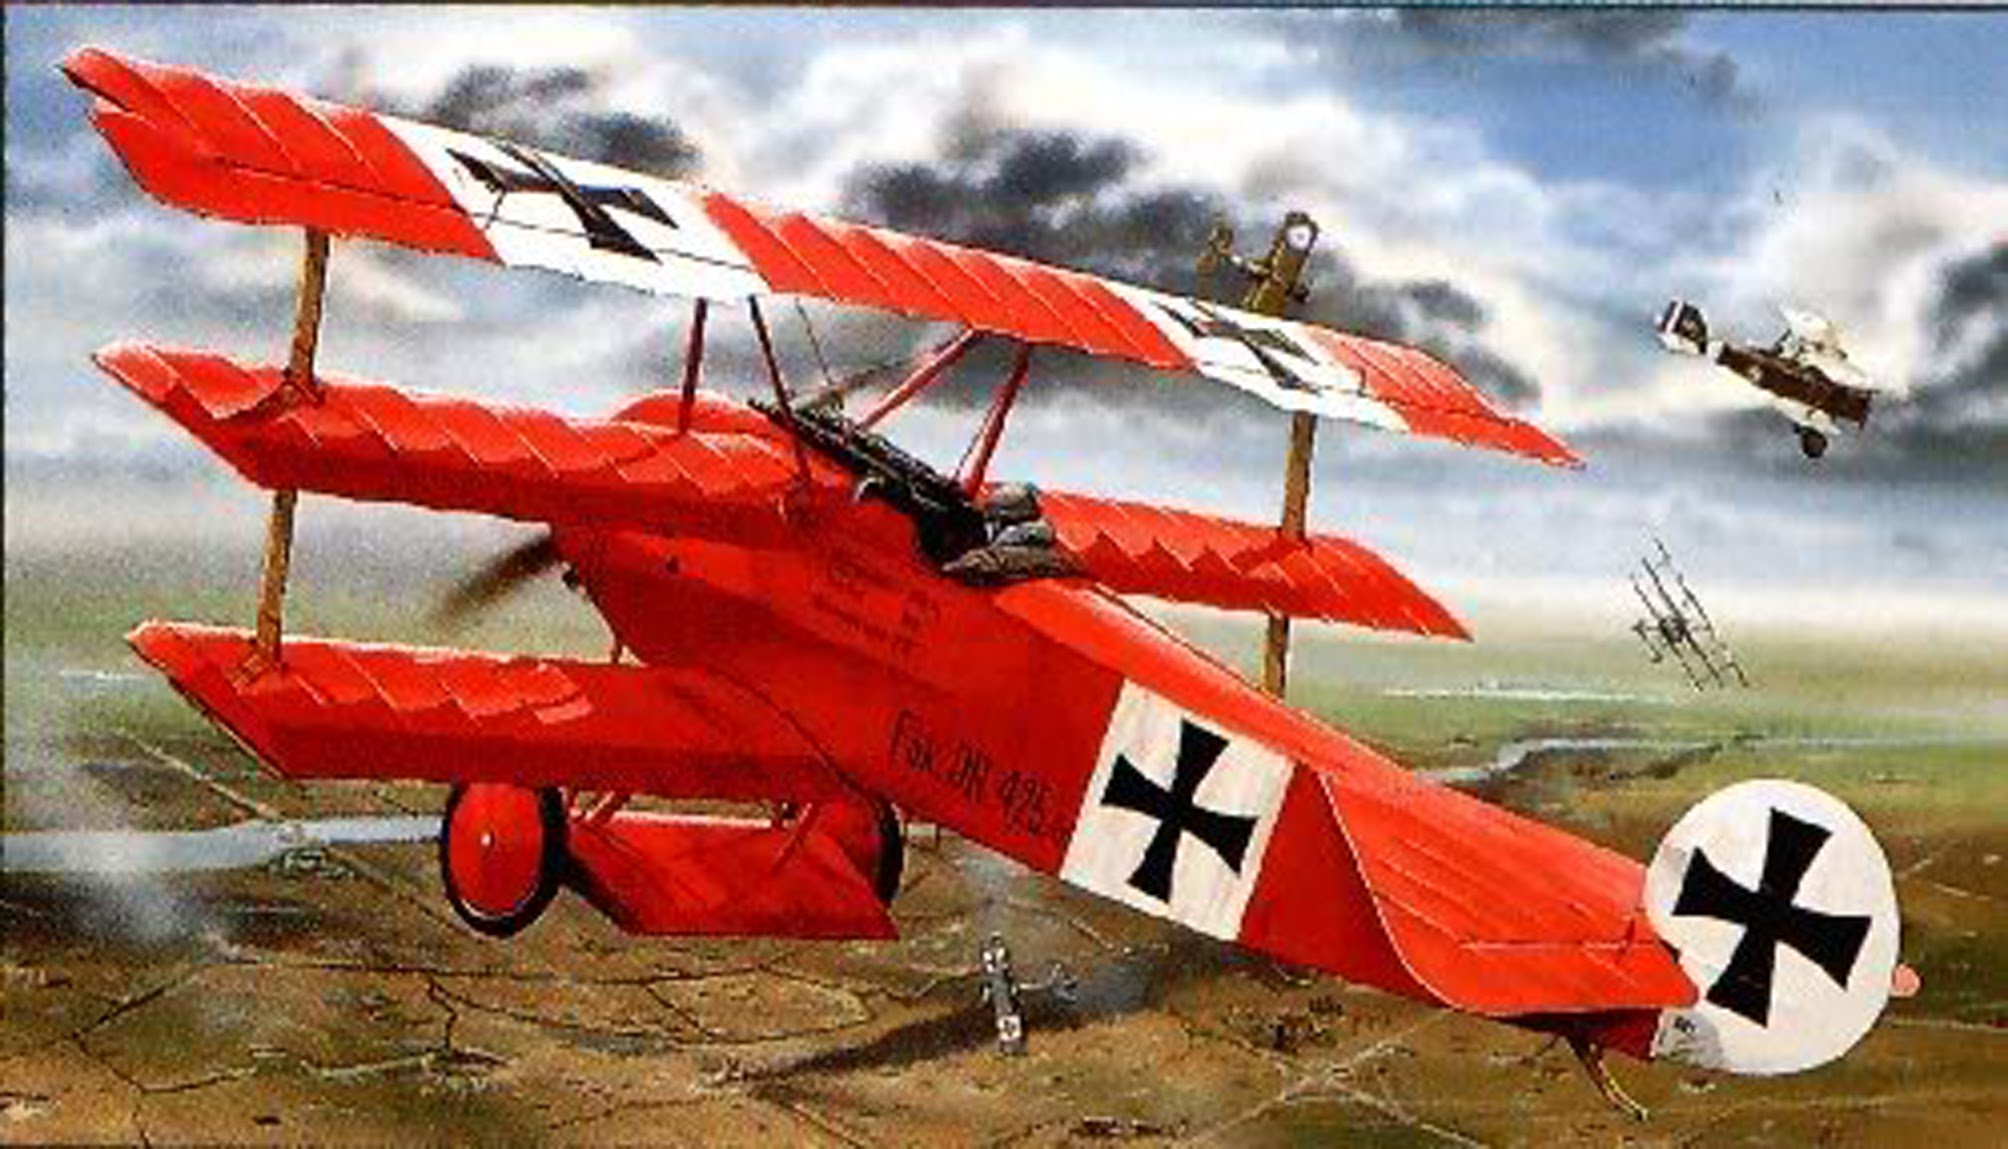 The Red Baron Ww1 Manfred Von Richthofen